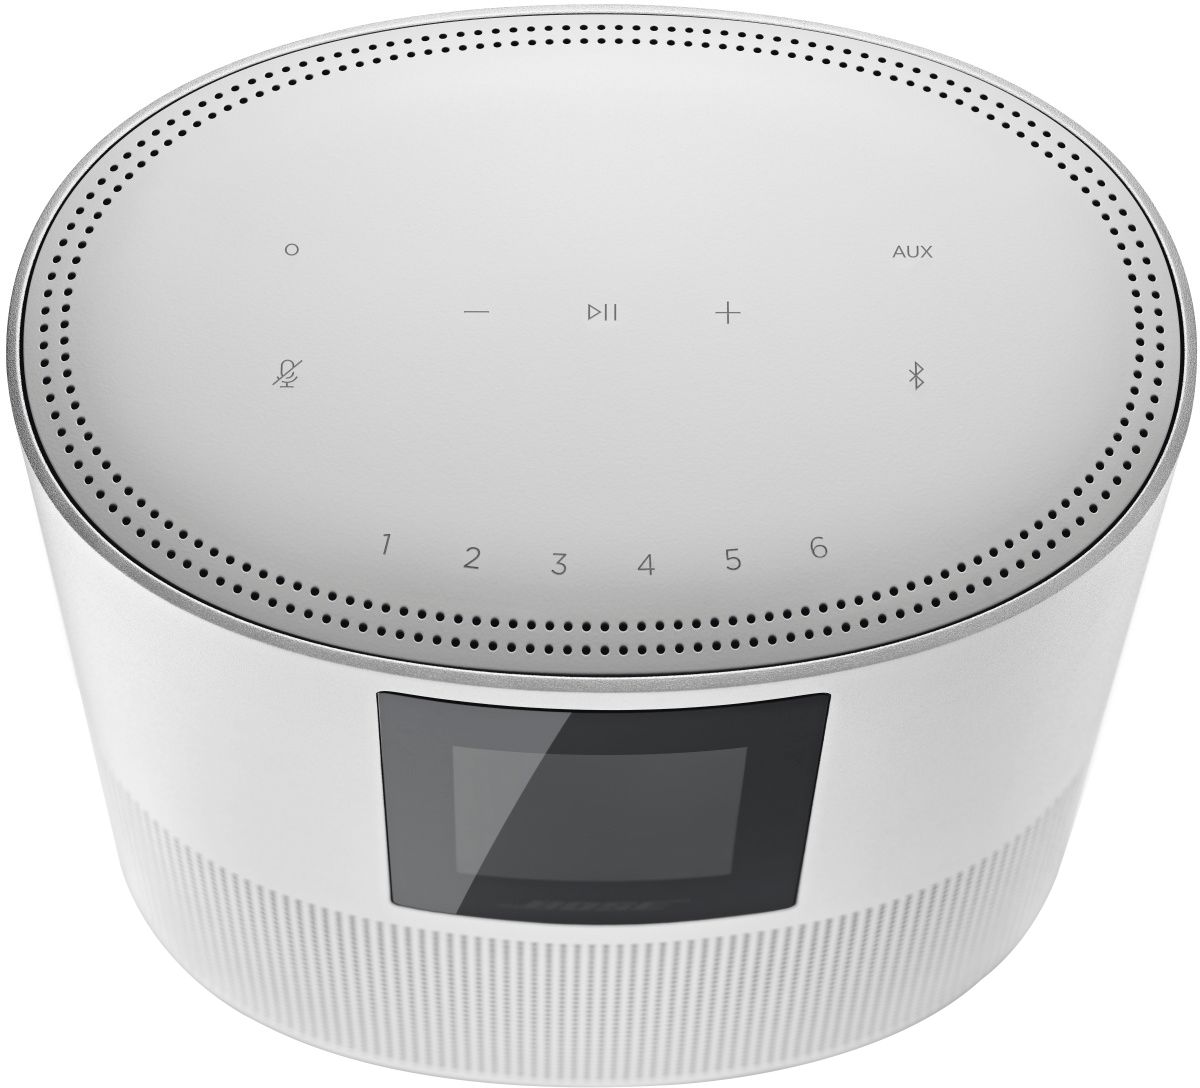 Bose Smart Speaker 500 Wireless All-In-One Smart Speaker Luxe 